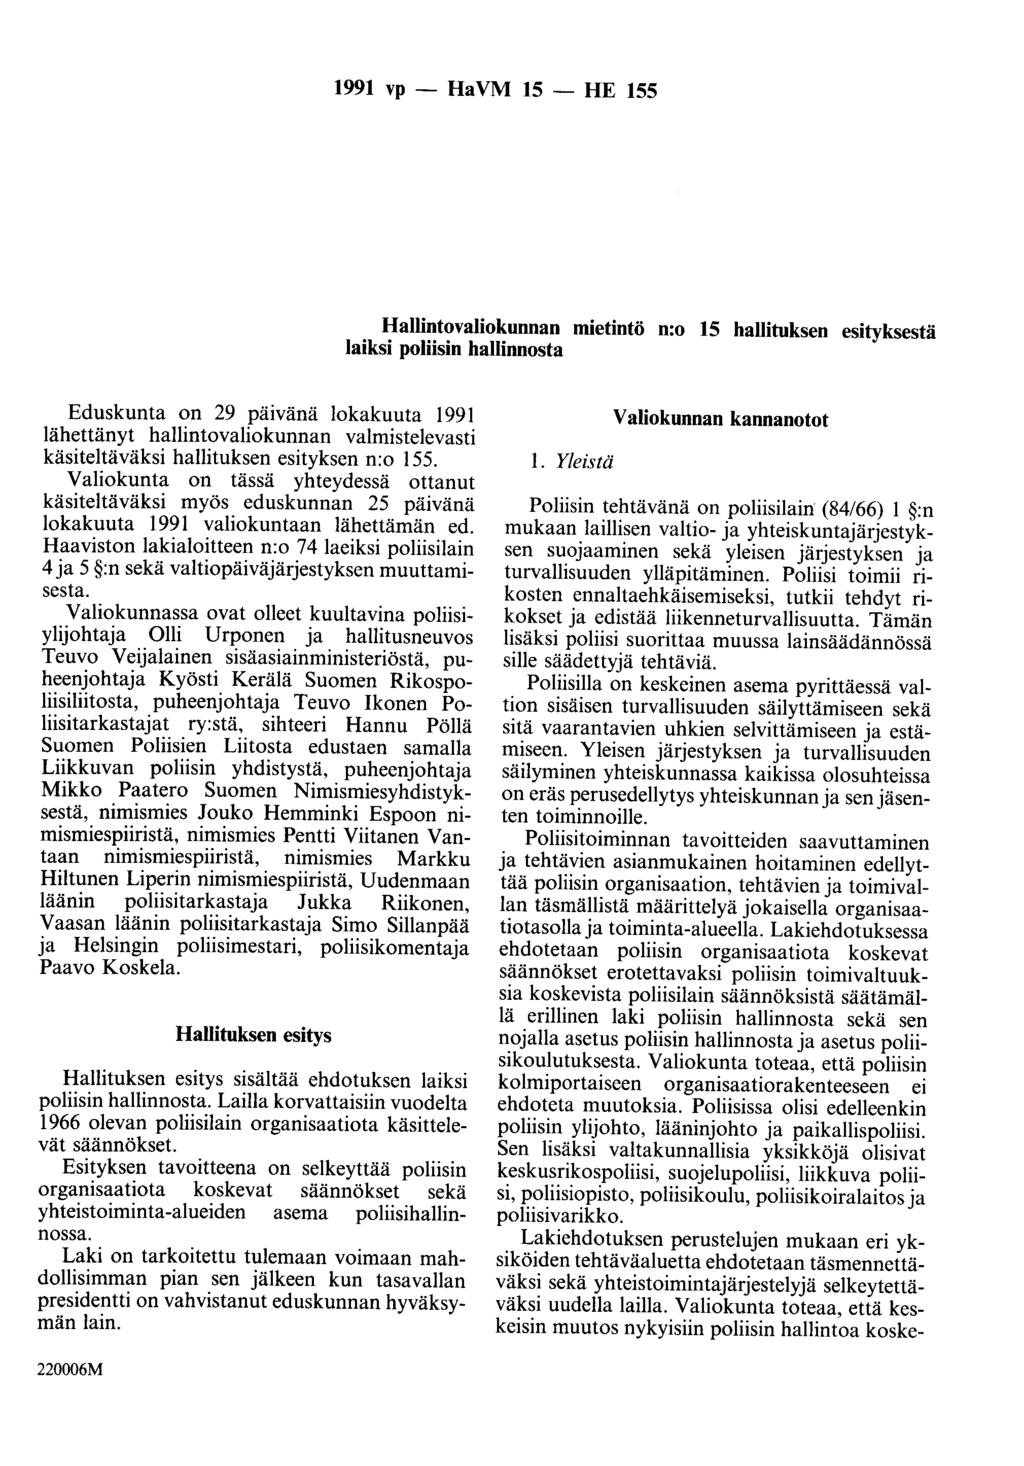 1991 vp - Ha VM 15 - HE 155 Hallintovaliokunnan mietintö n:o 15 hallituksen esityksestä laiksi poliisin hallinnosta Eduskunta on 29 päivänä lokakuuta 1991 lähettänyt hallintovaliokunnan